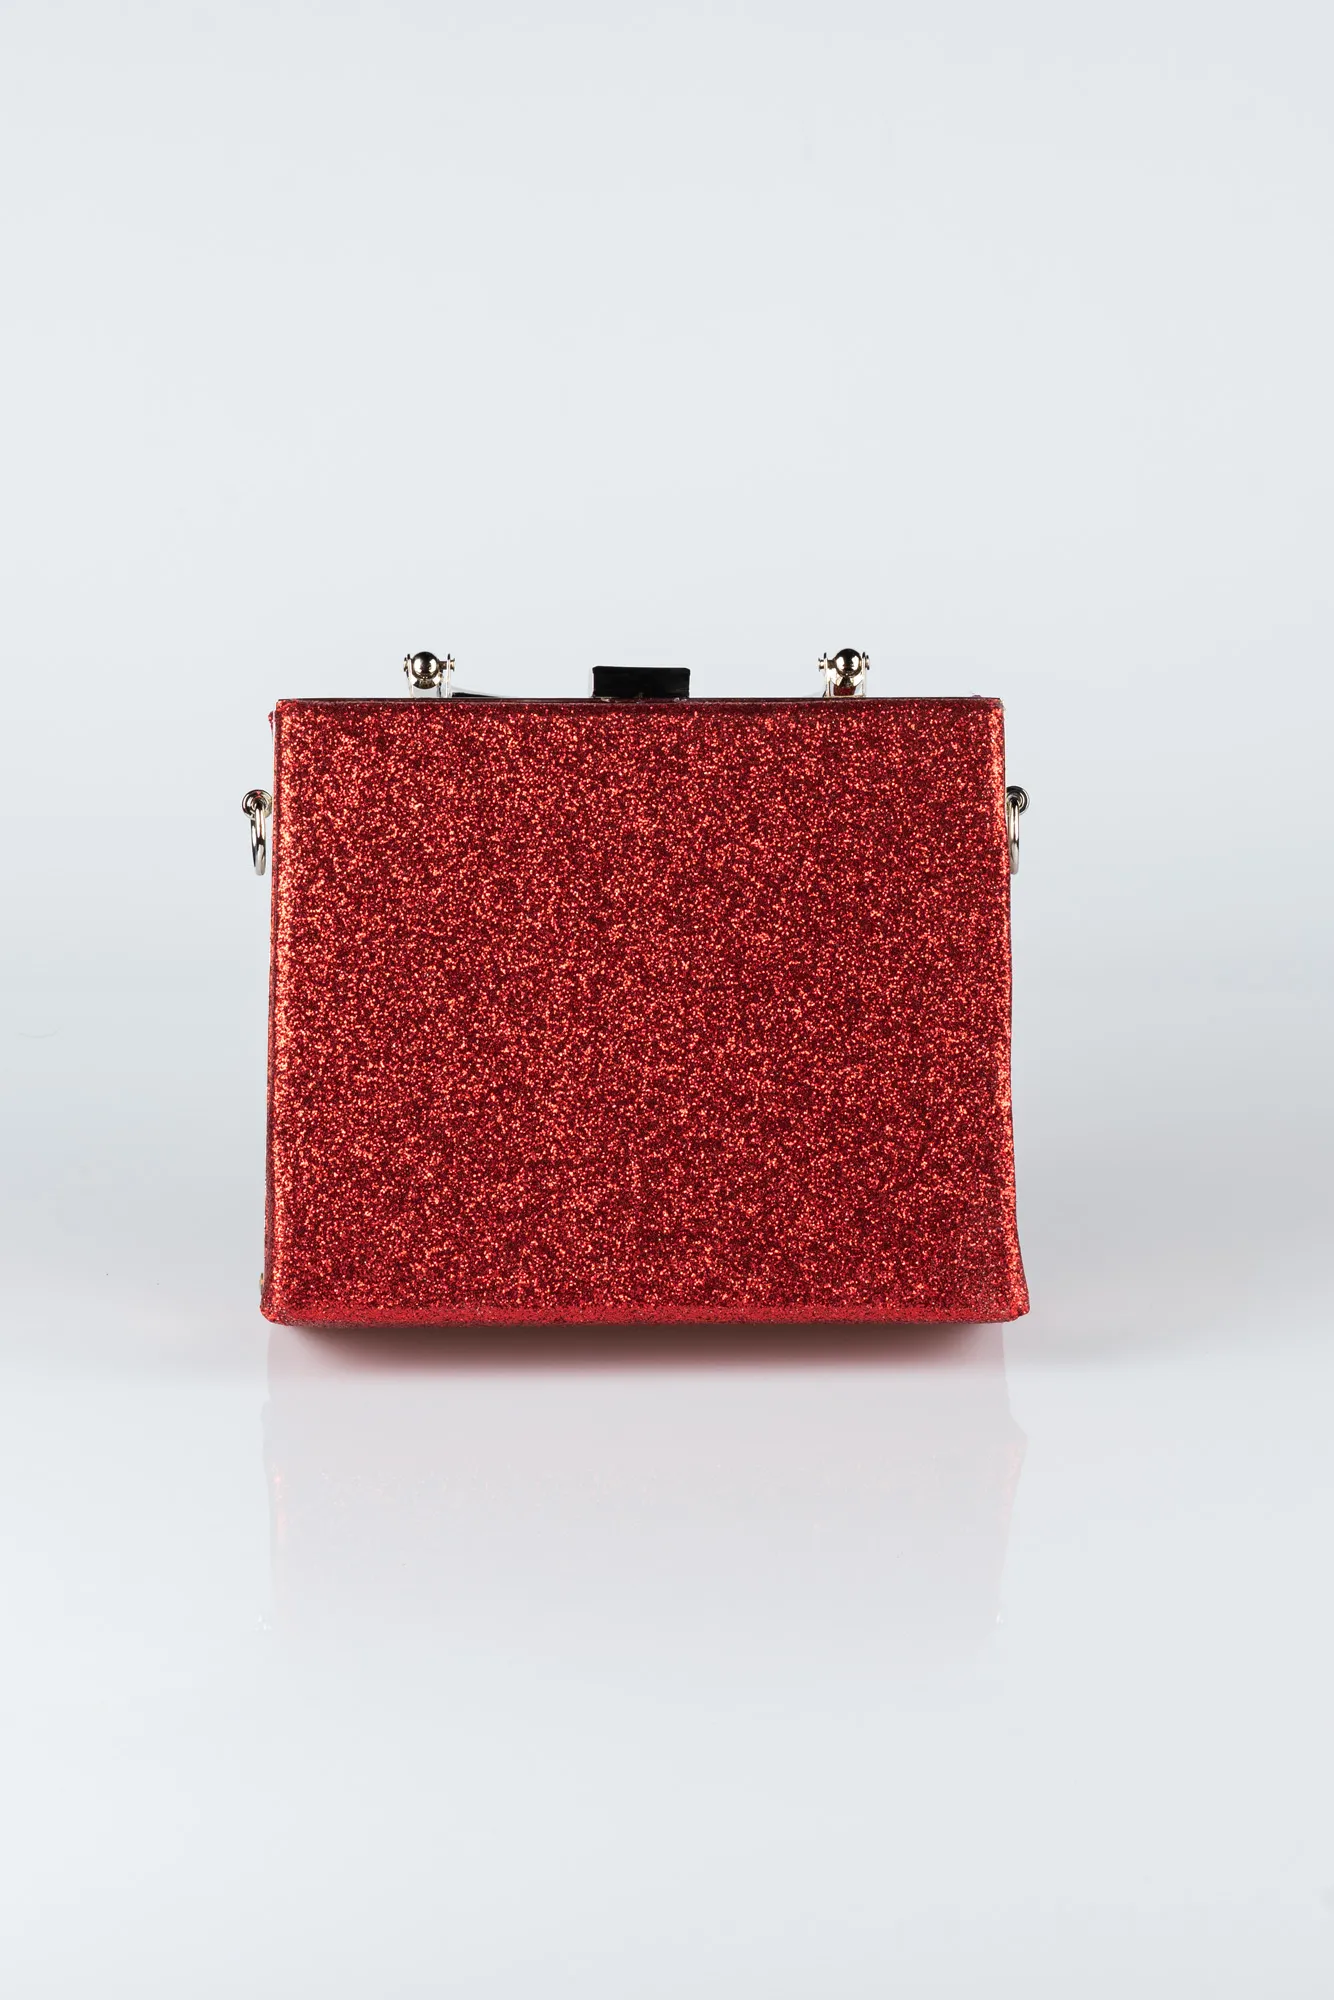 Red-Box Bag V294